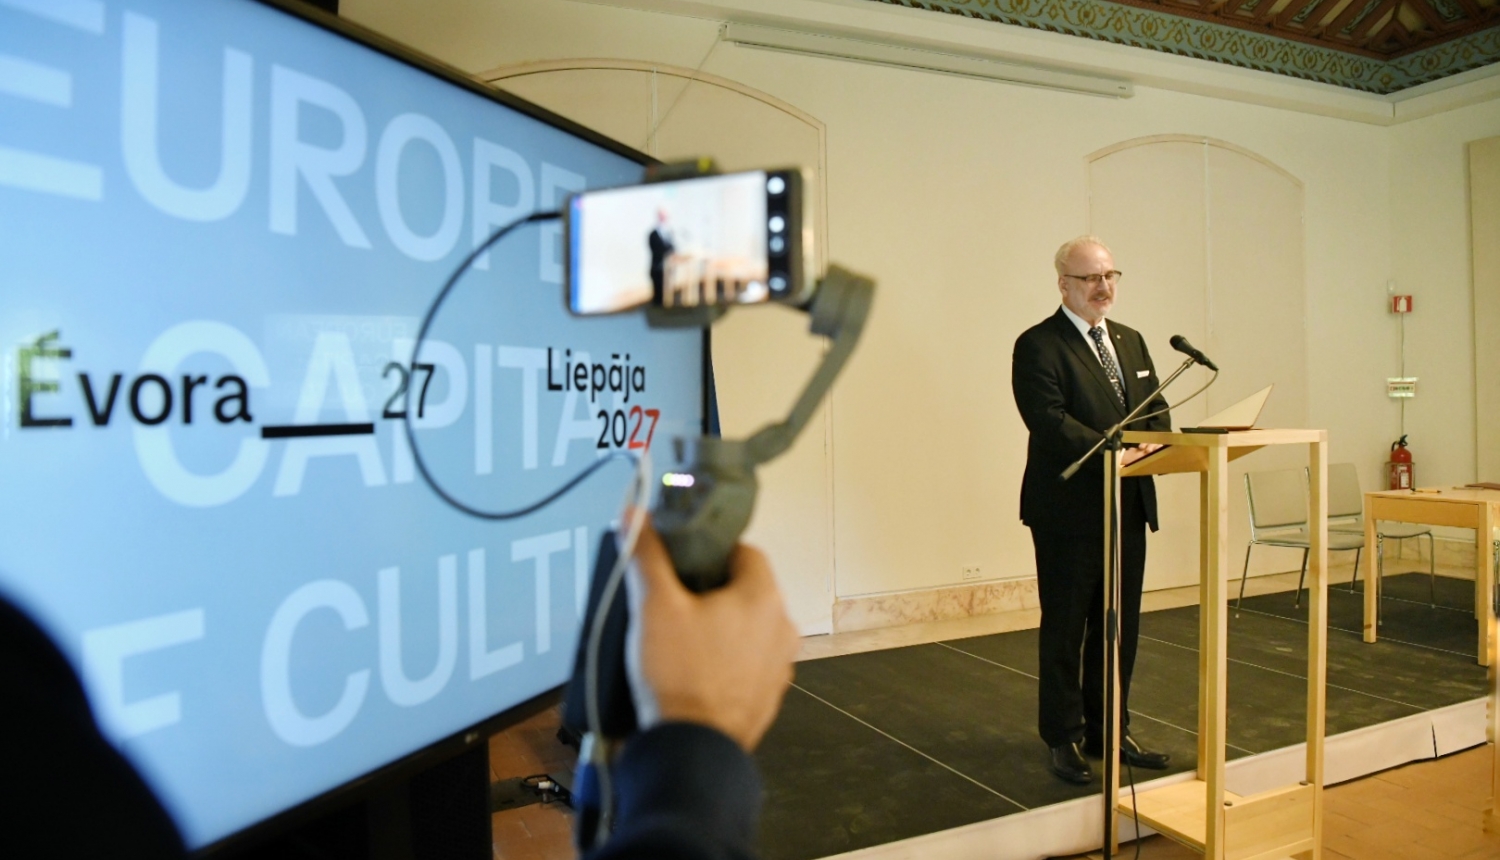 14.04.2023. Saprašanās memoranda parakstīšana starp 2027. gada Eiropas kultūras galvaspilsētām - Evoru un Liepāju. Foto: Valsts prezidents Egils Levits sniedz uzrunu. 